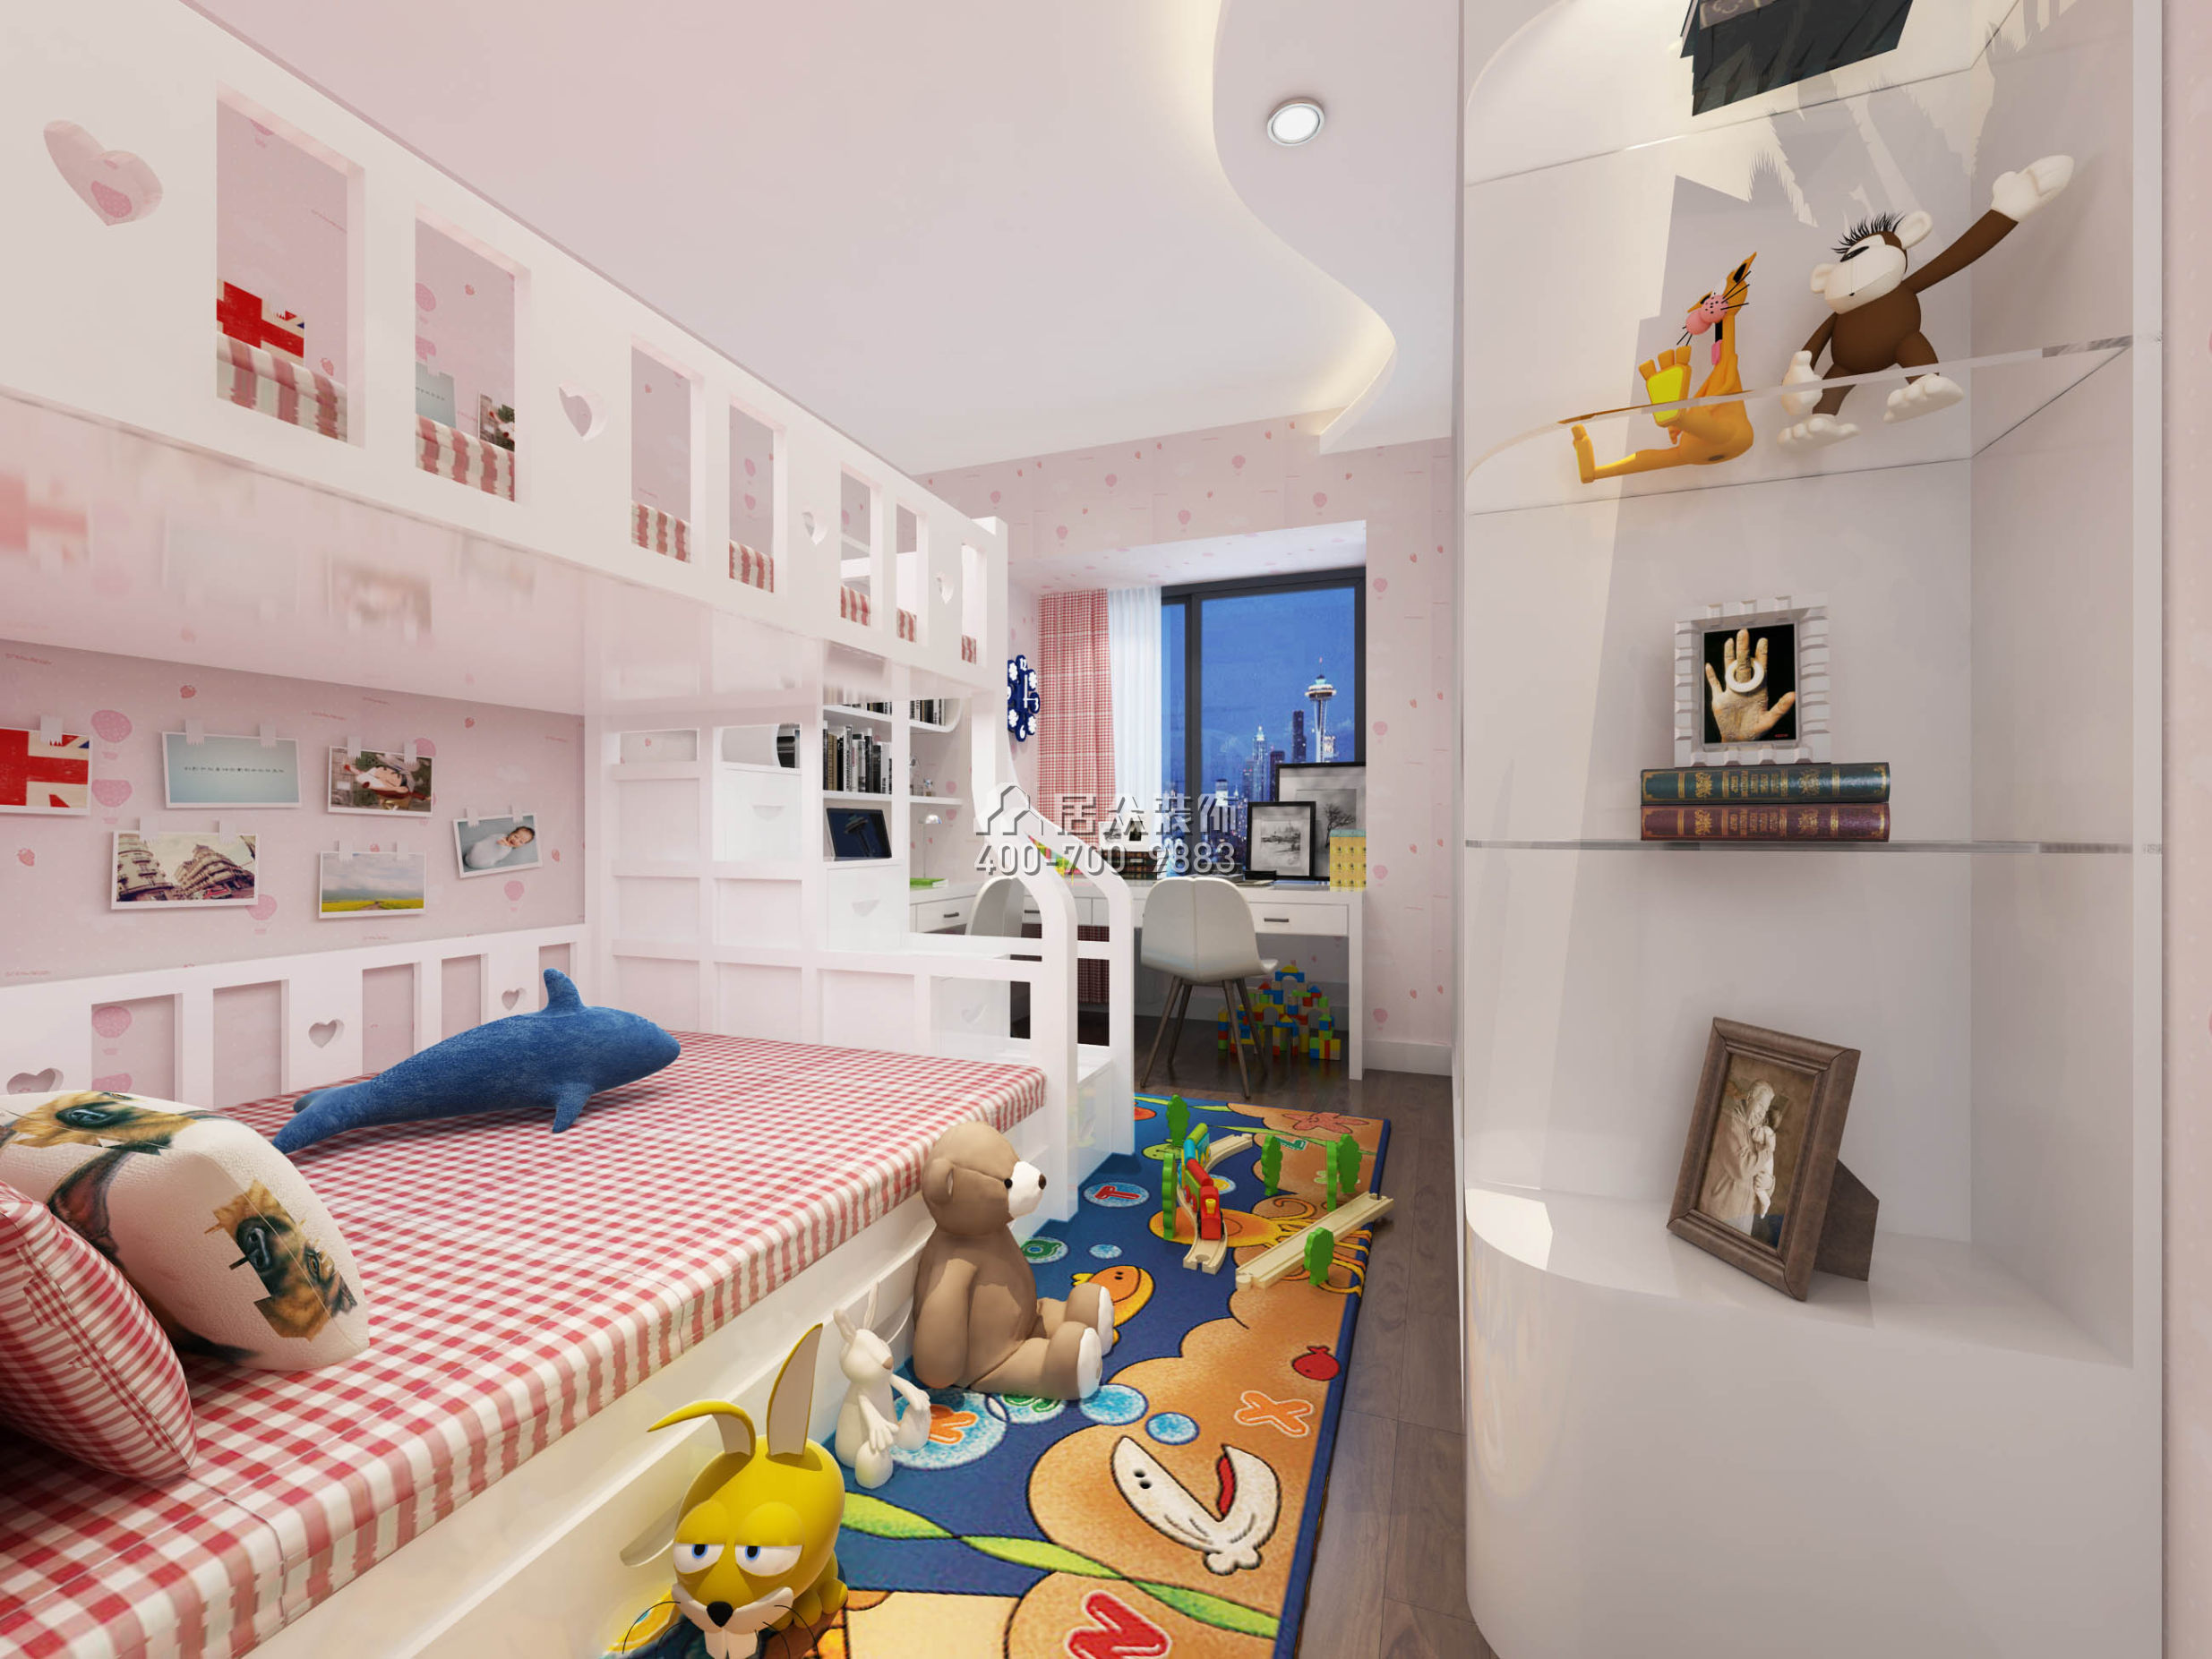 宏發嘉域89平方米歐式風格平層戶型兒童房裝修效果圖